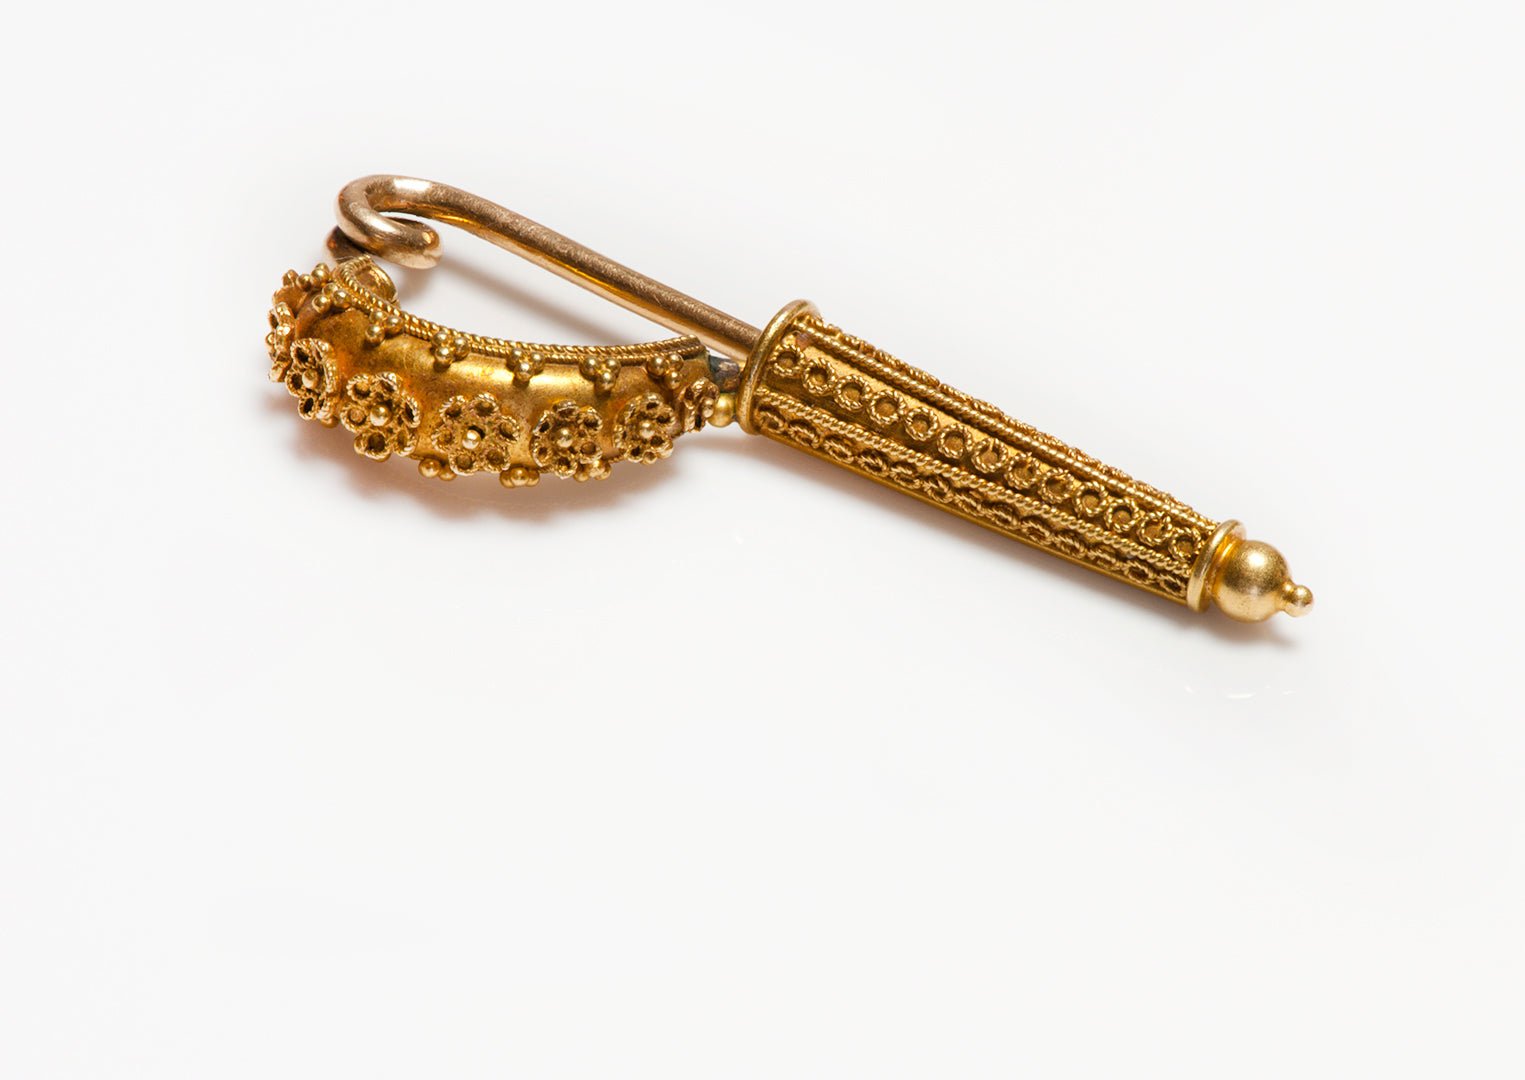 Antique Victorian Gold Fibula